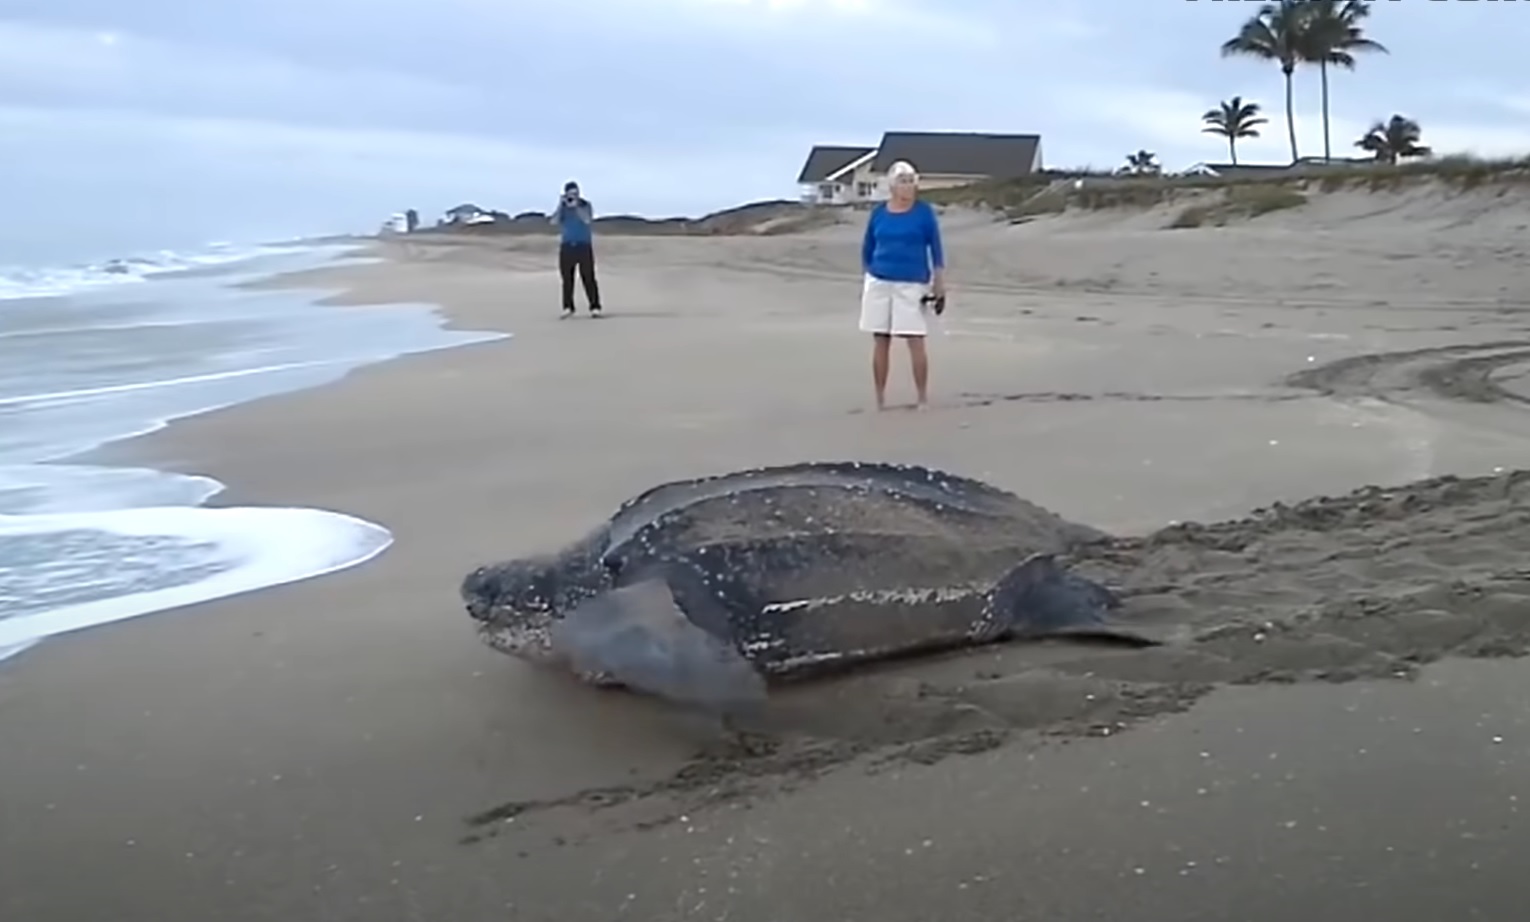 World's Largest Sea Turtle! Giant Leatherback Sea Turtle!